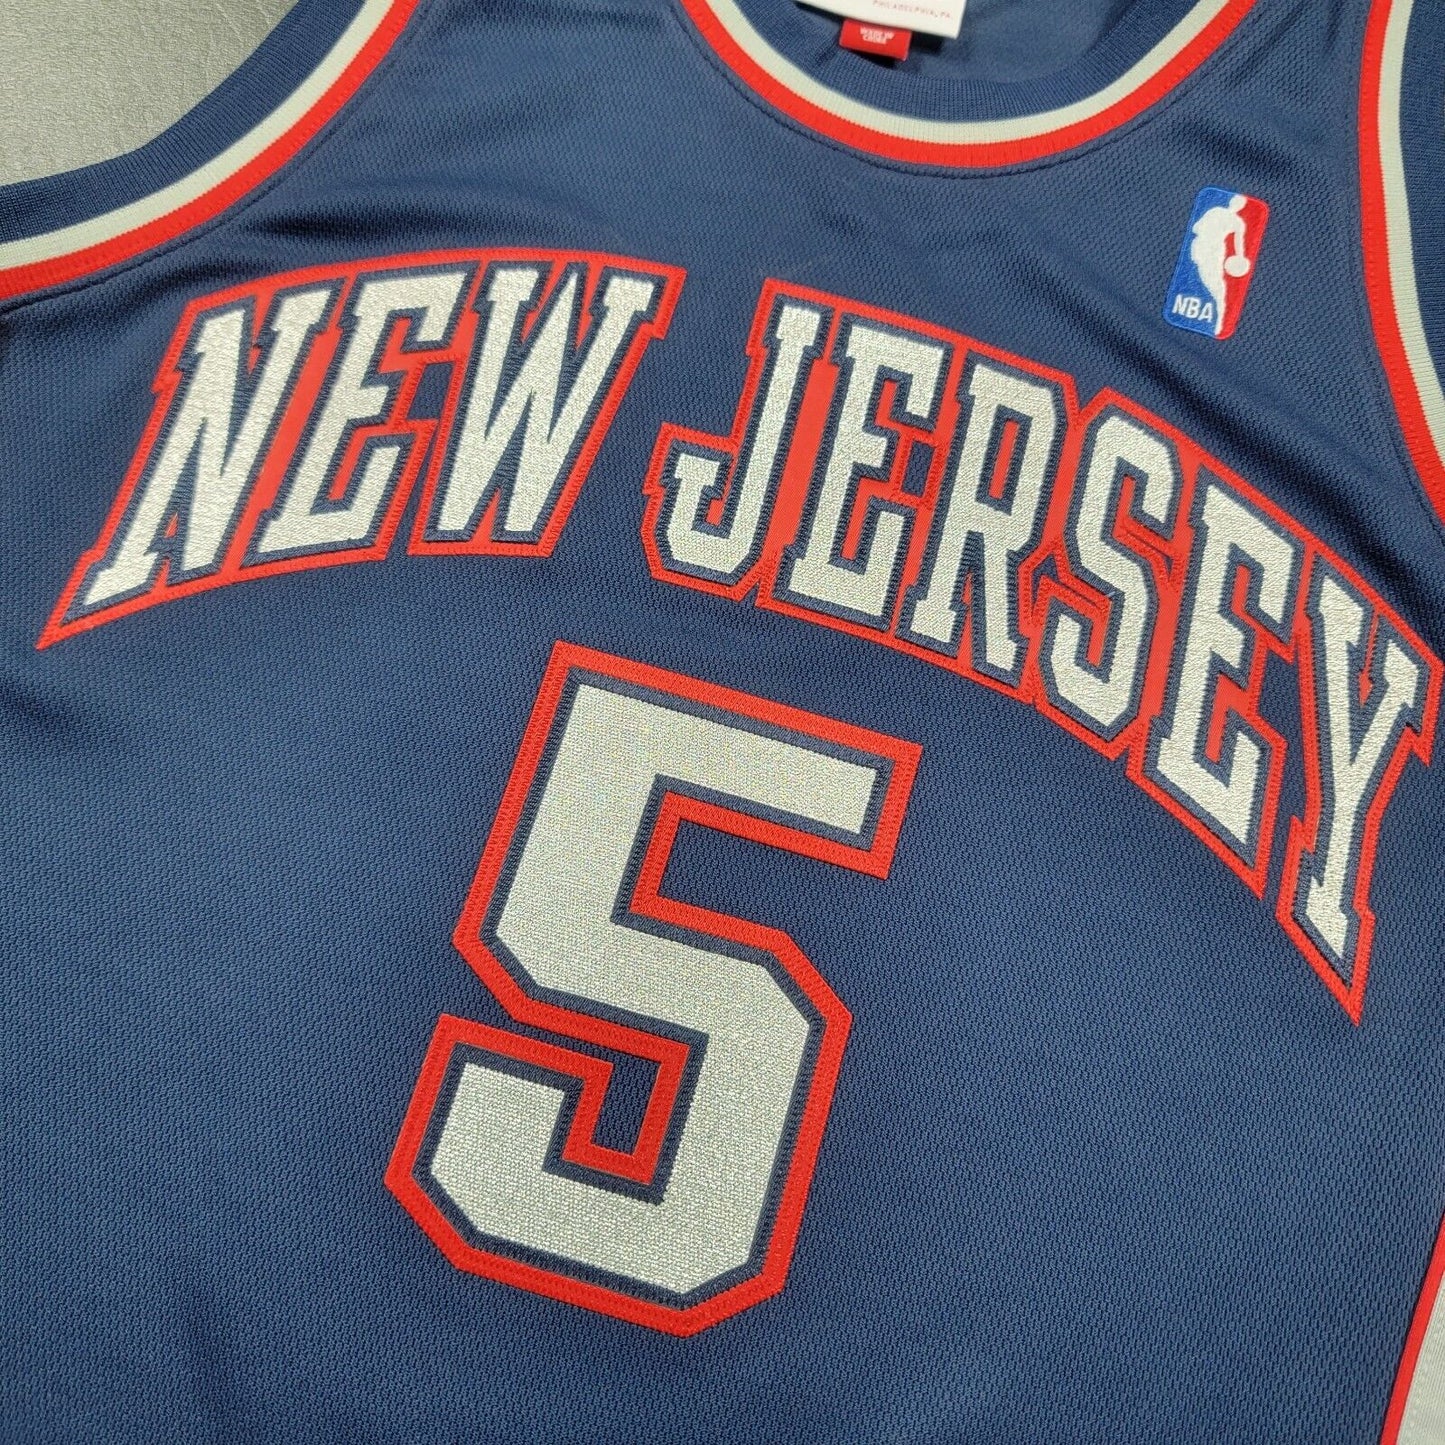 100% Authentic Jason Kidd Mitchell & Ness 06 07 NJ Nets Jersey Size 40 M Mens